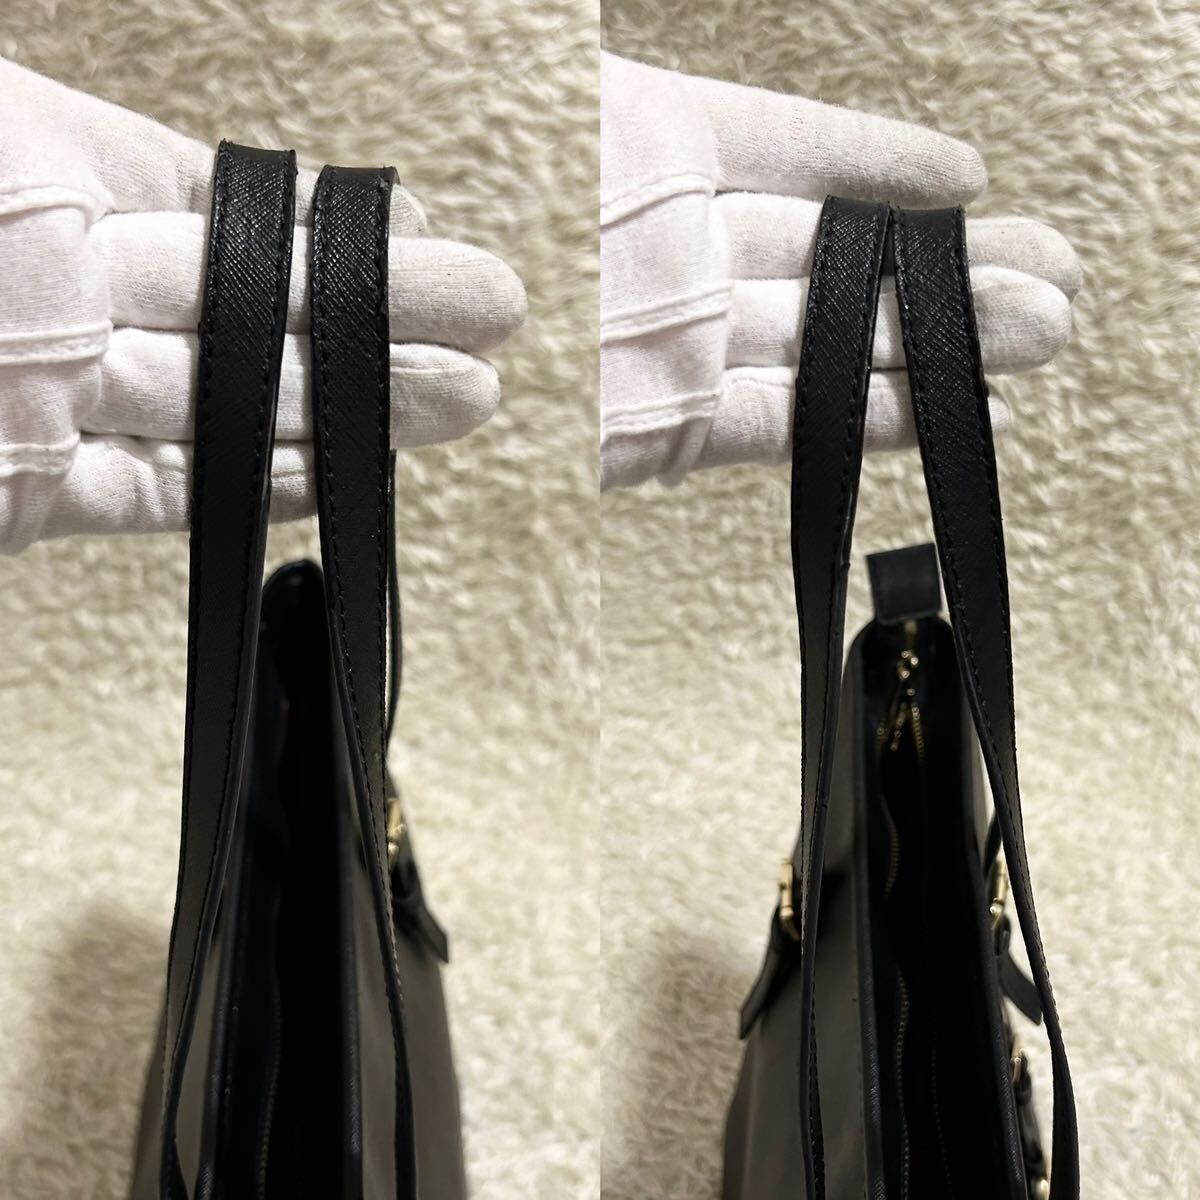  Michael Kors MICHAEL KORS мужской большая сумка портфель портфель 2way A4 PC наклонный ..safia-no кожа натуральная кожа черный 